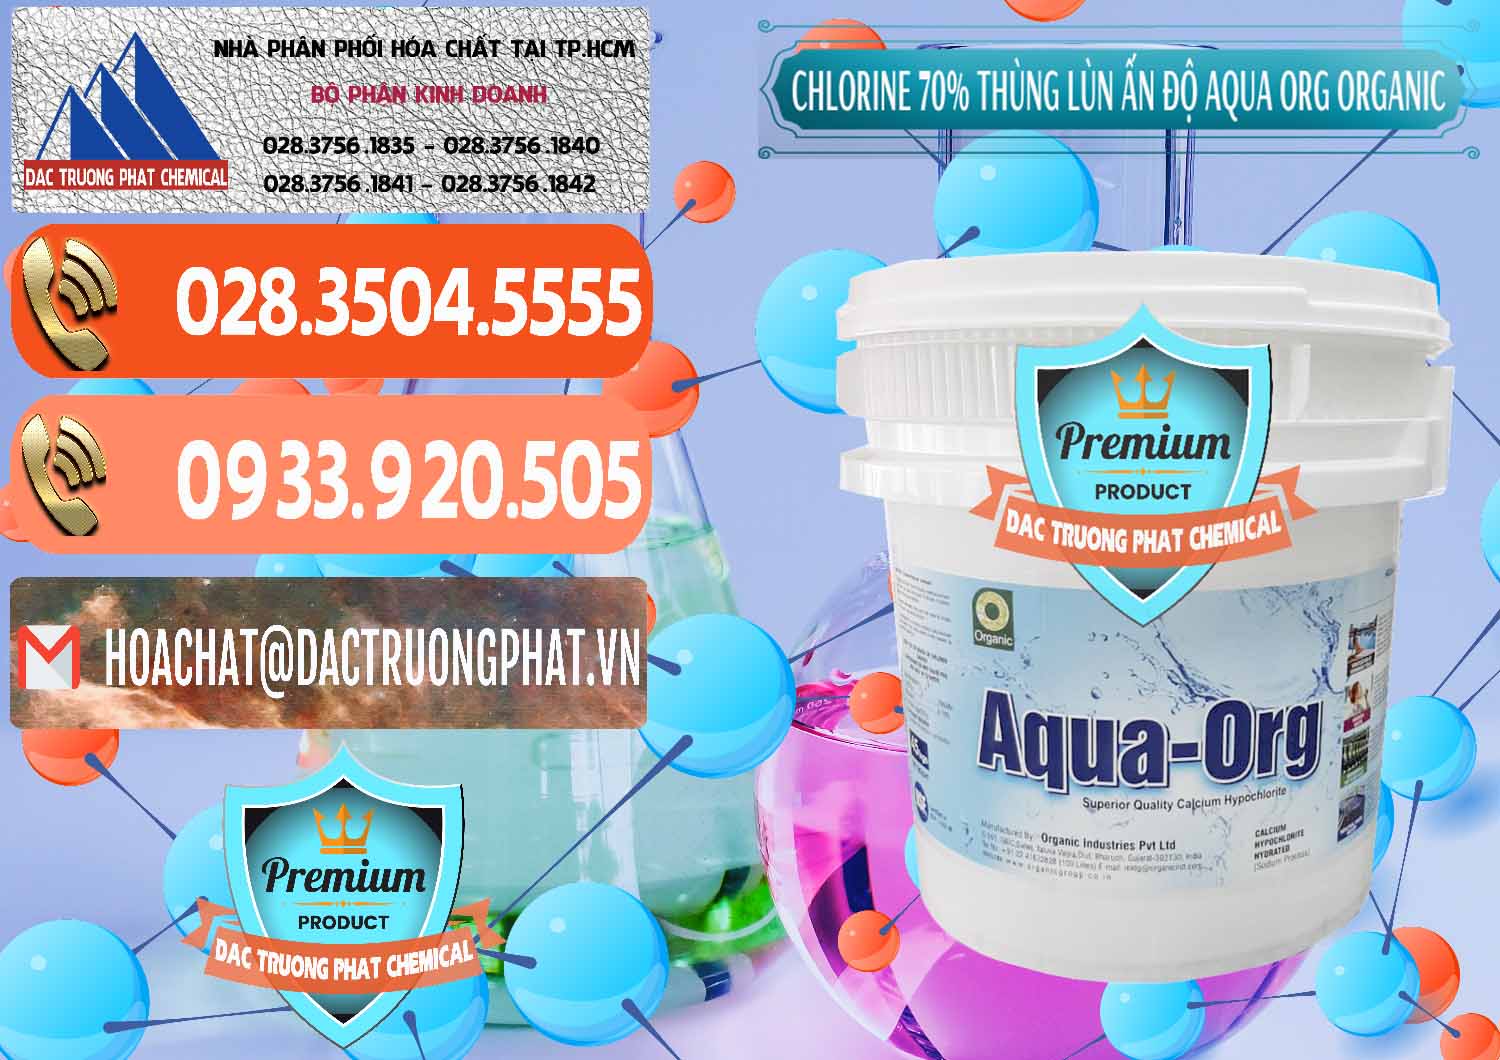 Cty chuyên bán và phân phối Chlorine – Clorin 70% Thùng Lùn Ấn Độ Aqua ORG Organic India - 0212 - Cung cấp và kinh doanh hóa chất tại TP.HCM - hoachatmientay.com